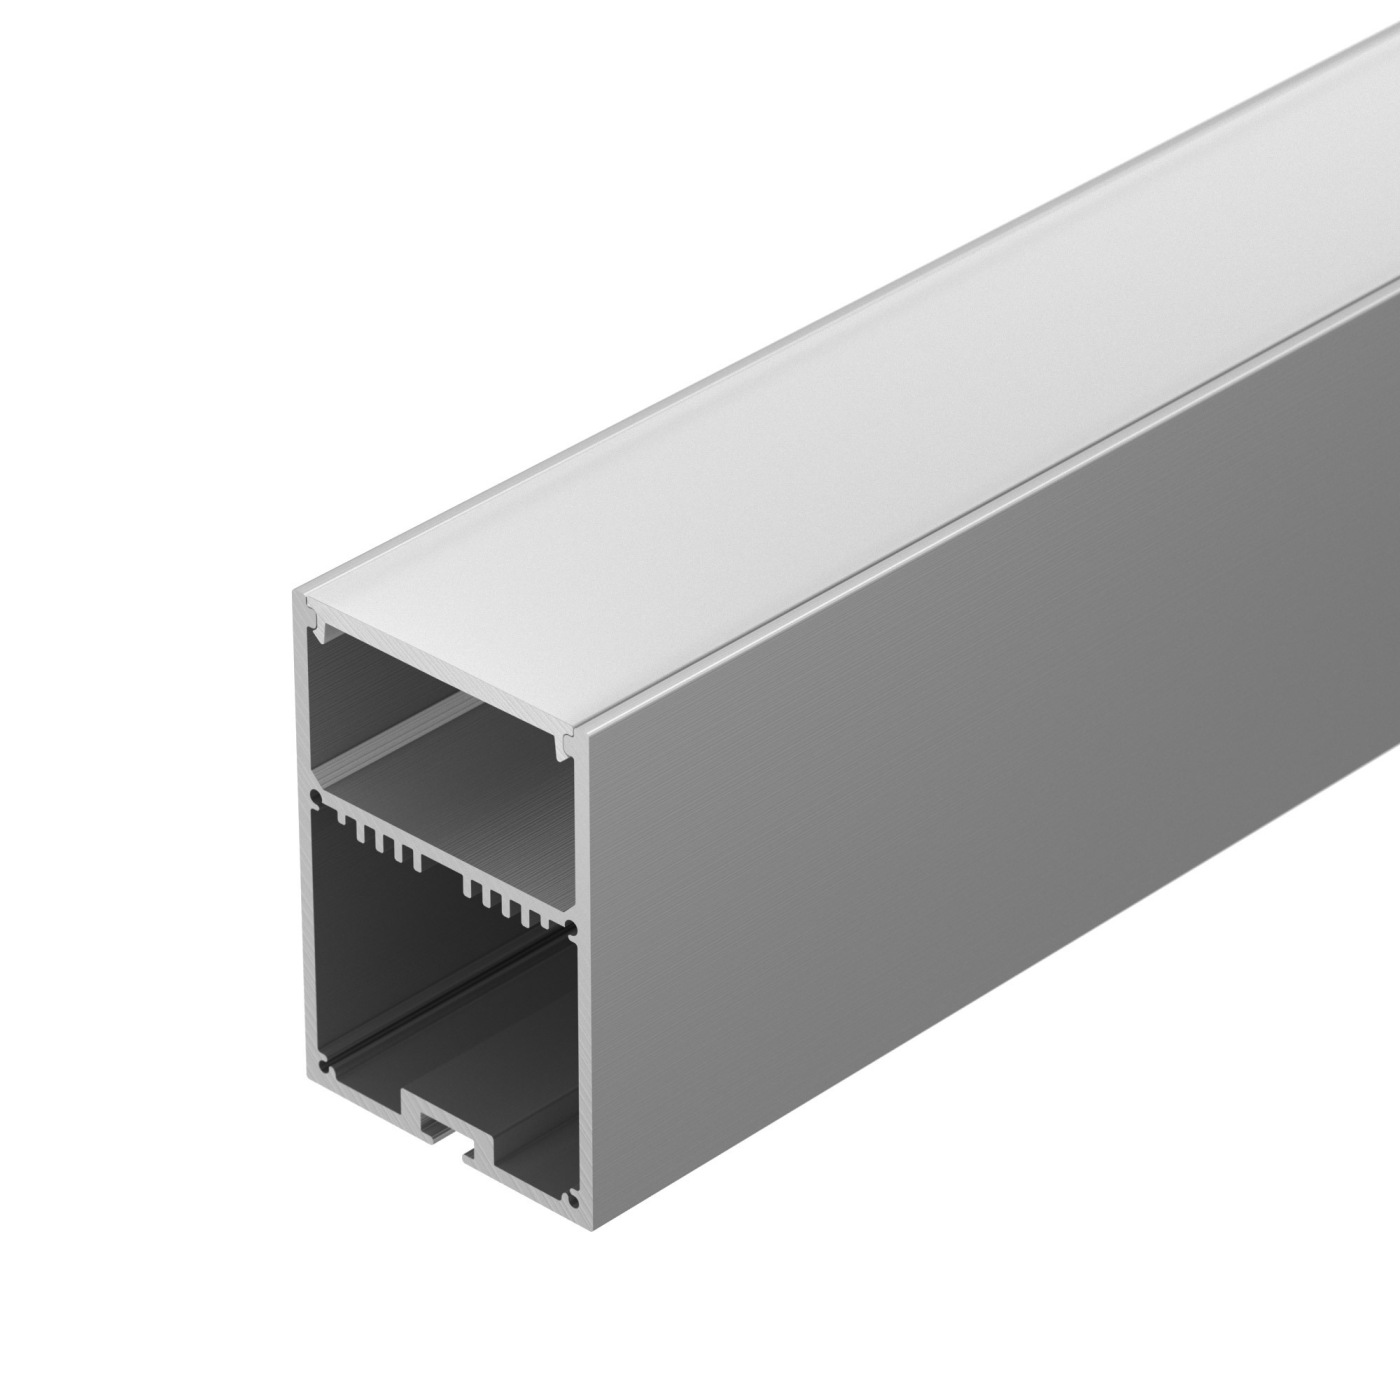 Профиль SL-LINE-4970-2000 ANOD профиль алюминиевый накладной подвесной с отсеком для бп серебро cab266